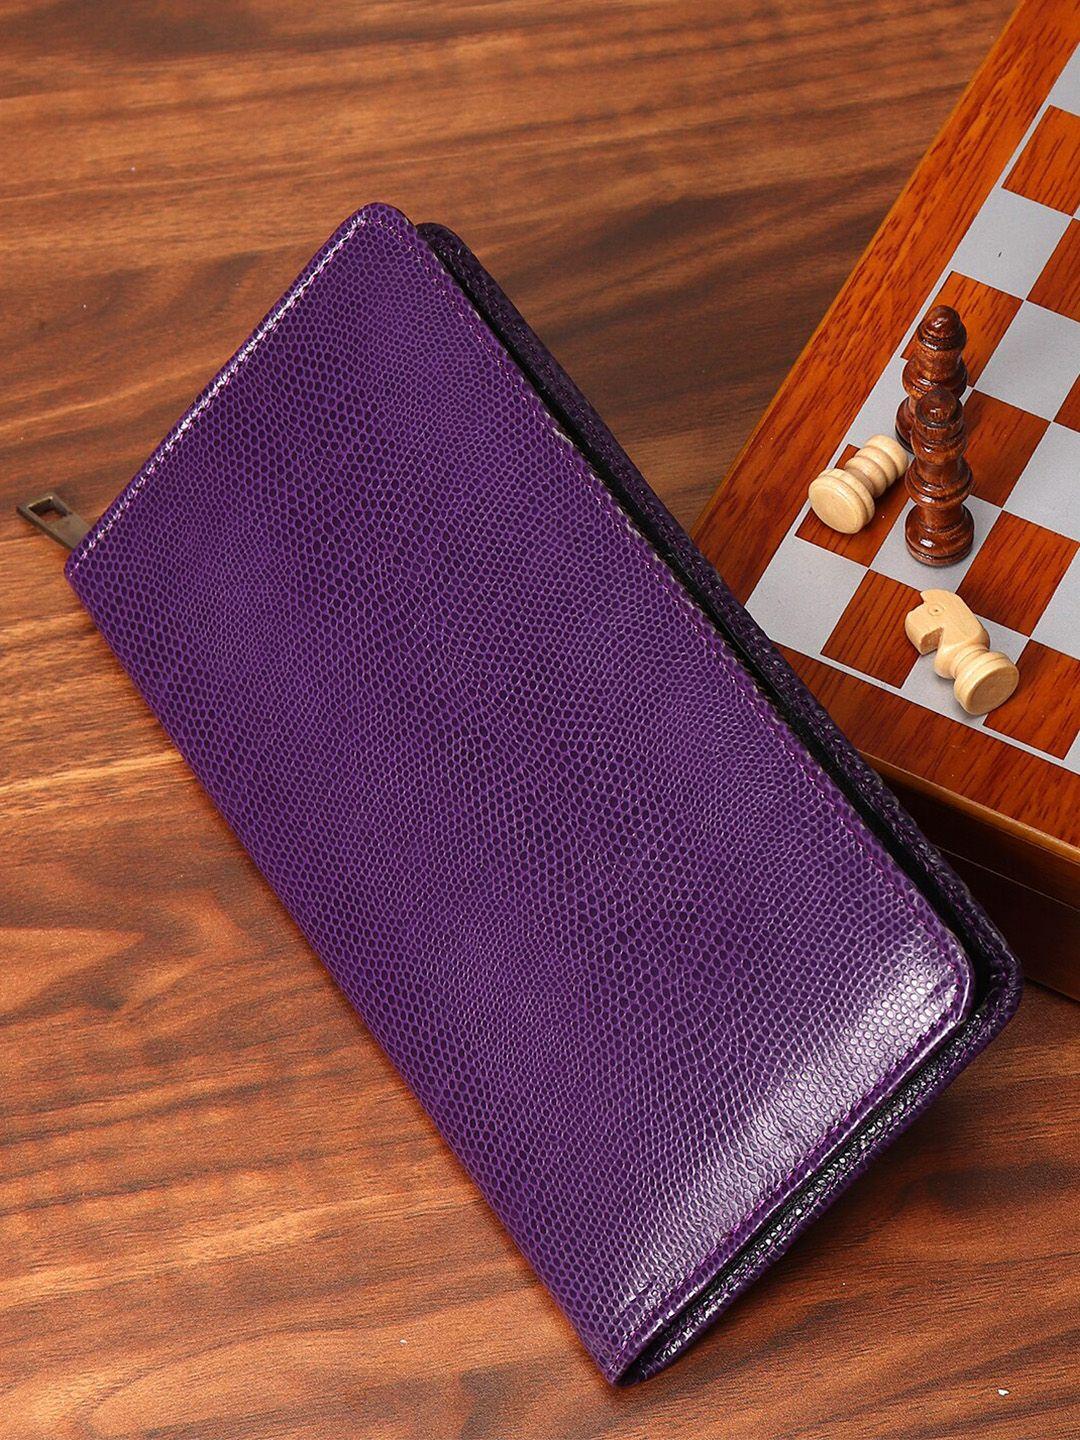 mutaqinoti unisex violet textured zip around wallet with passport holder